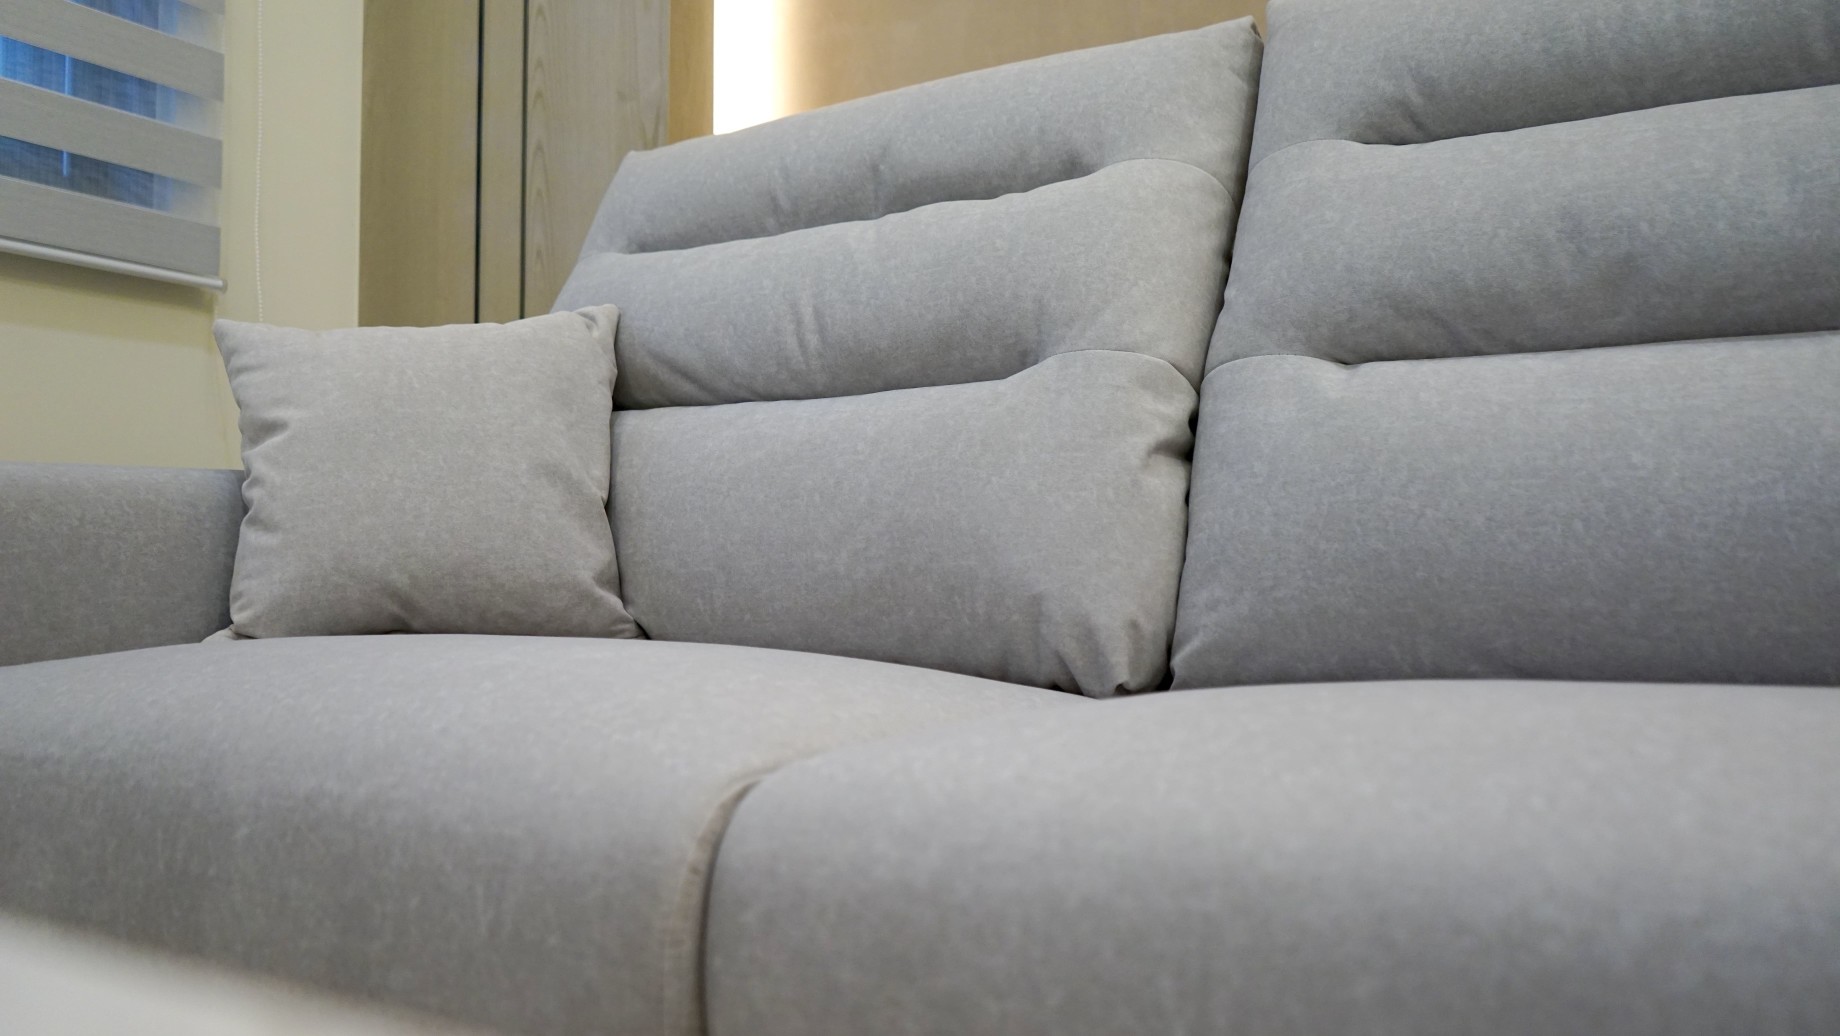 採高密度泡棉製作而成的尼克沙發，回彈性、包覆性更佳